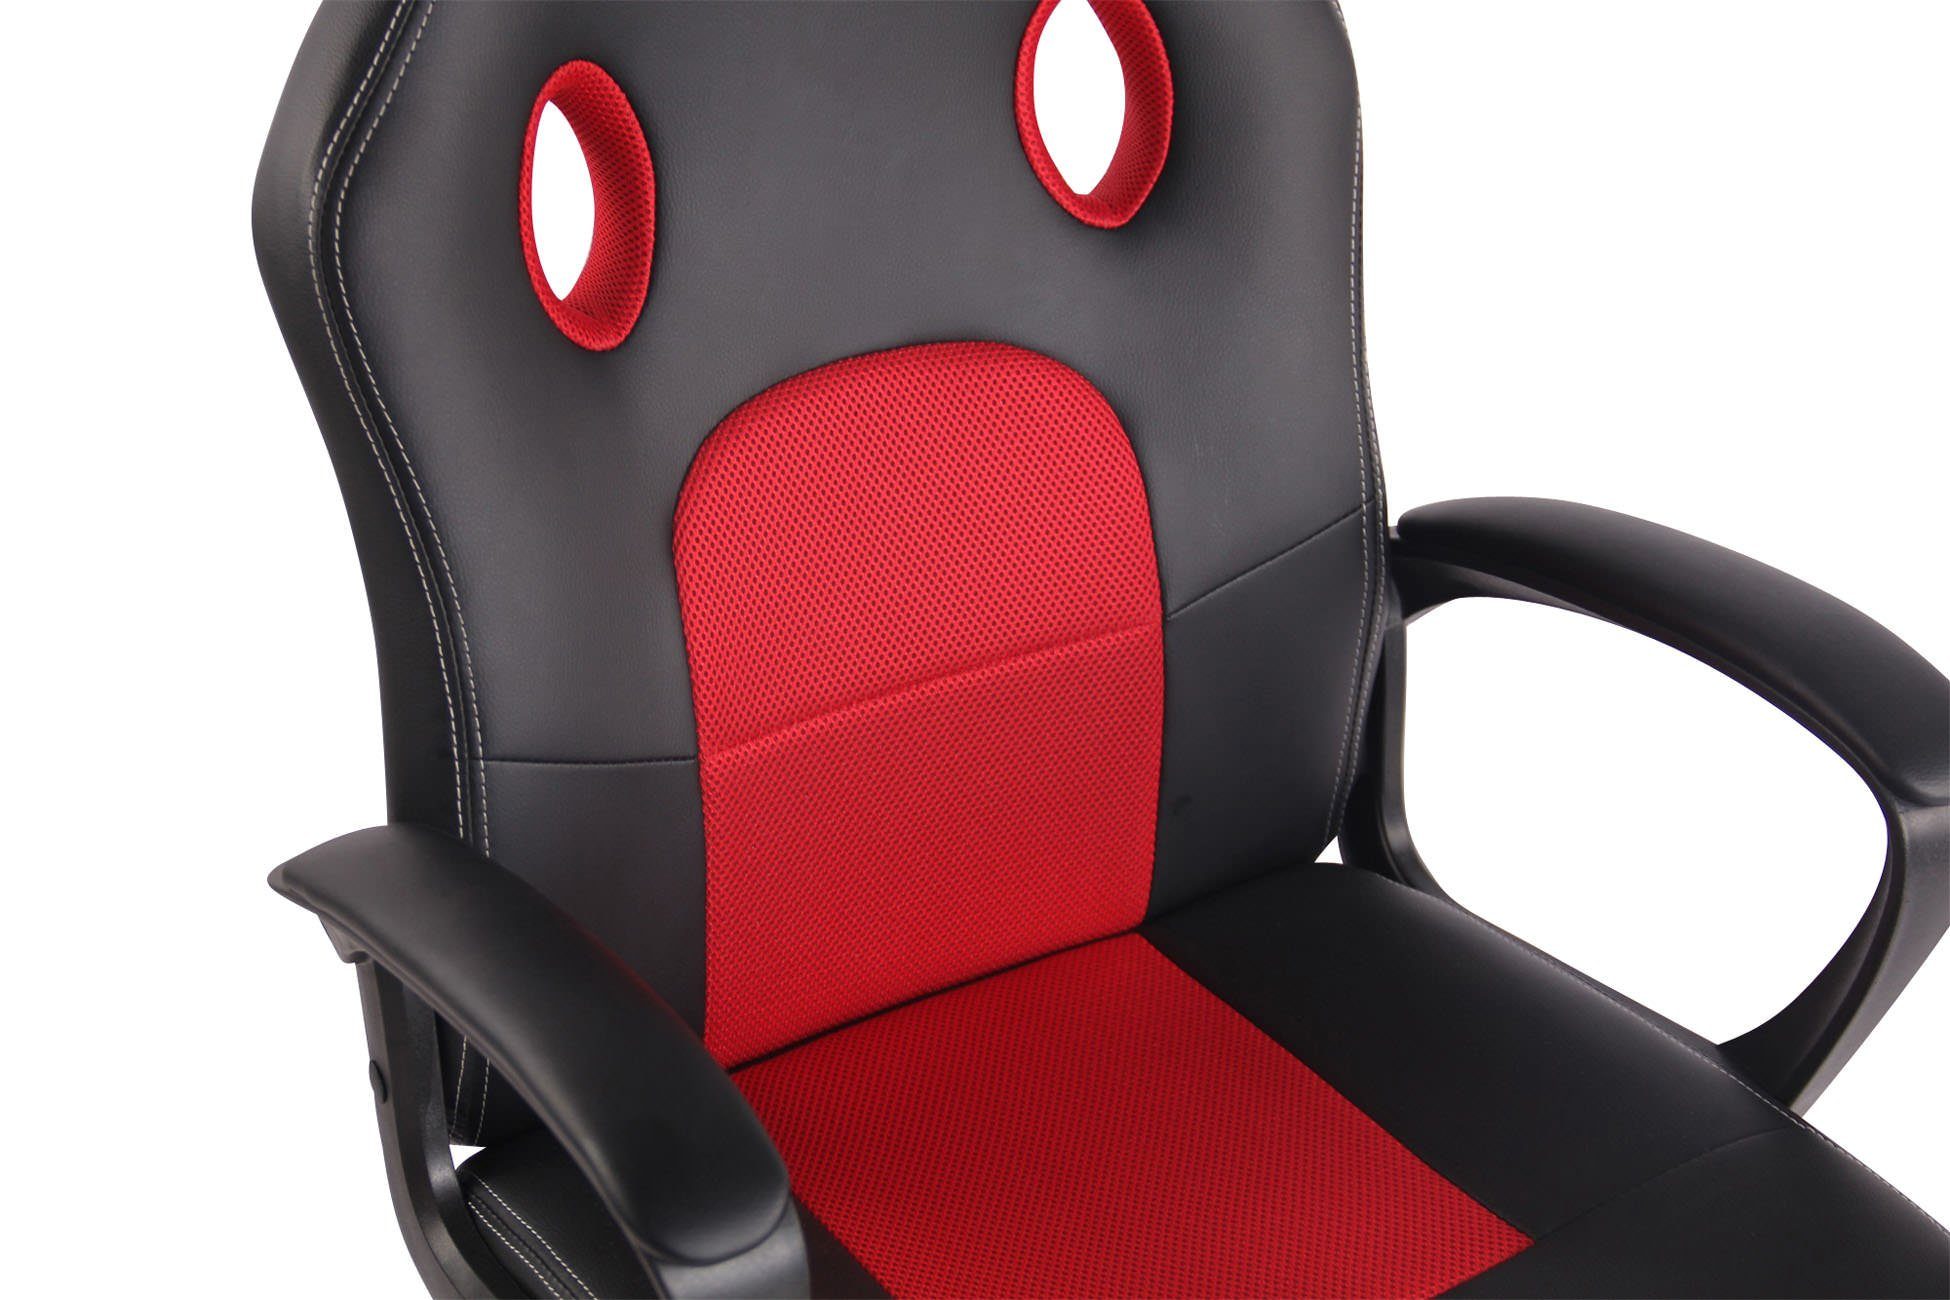 Chair drehbar höhenverstellbar und Elbing, CLP schwarz/rot Gaming